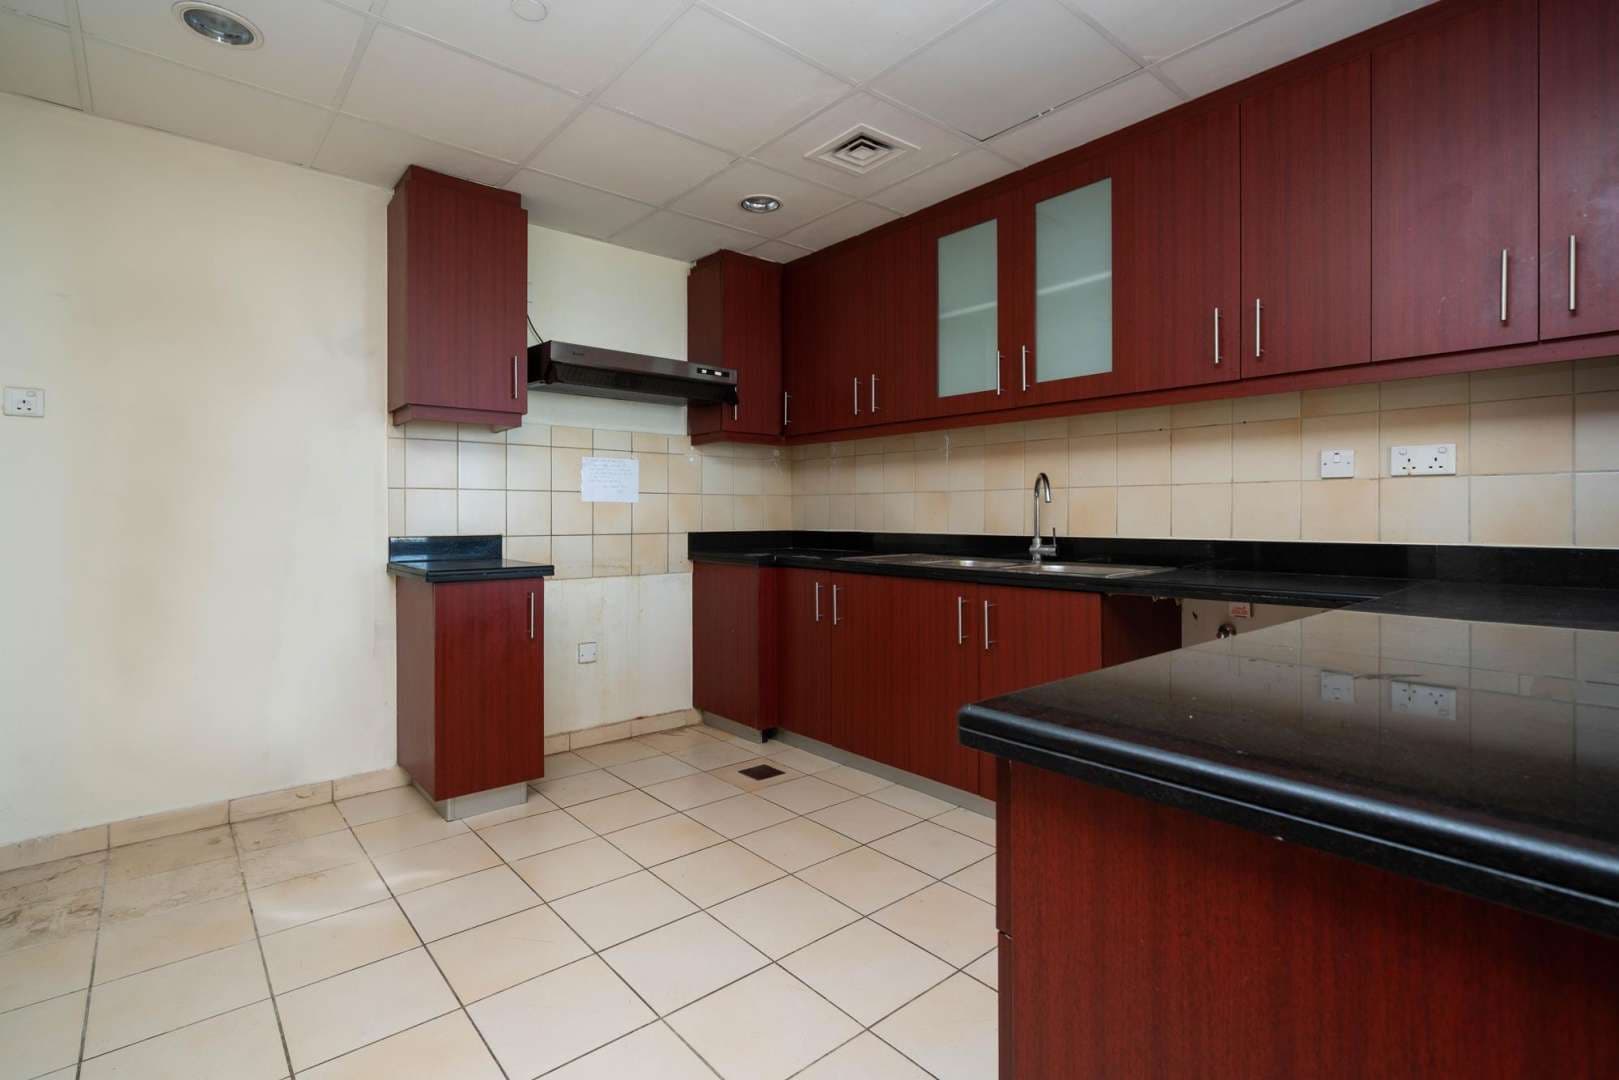 2 Bedroom Apartment For Rent Bahar Lp05025 2254102fd26de200.jpeg